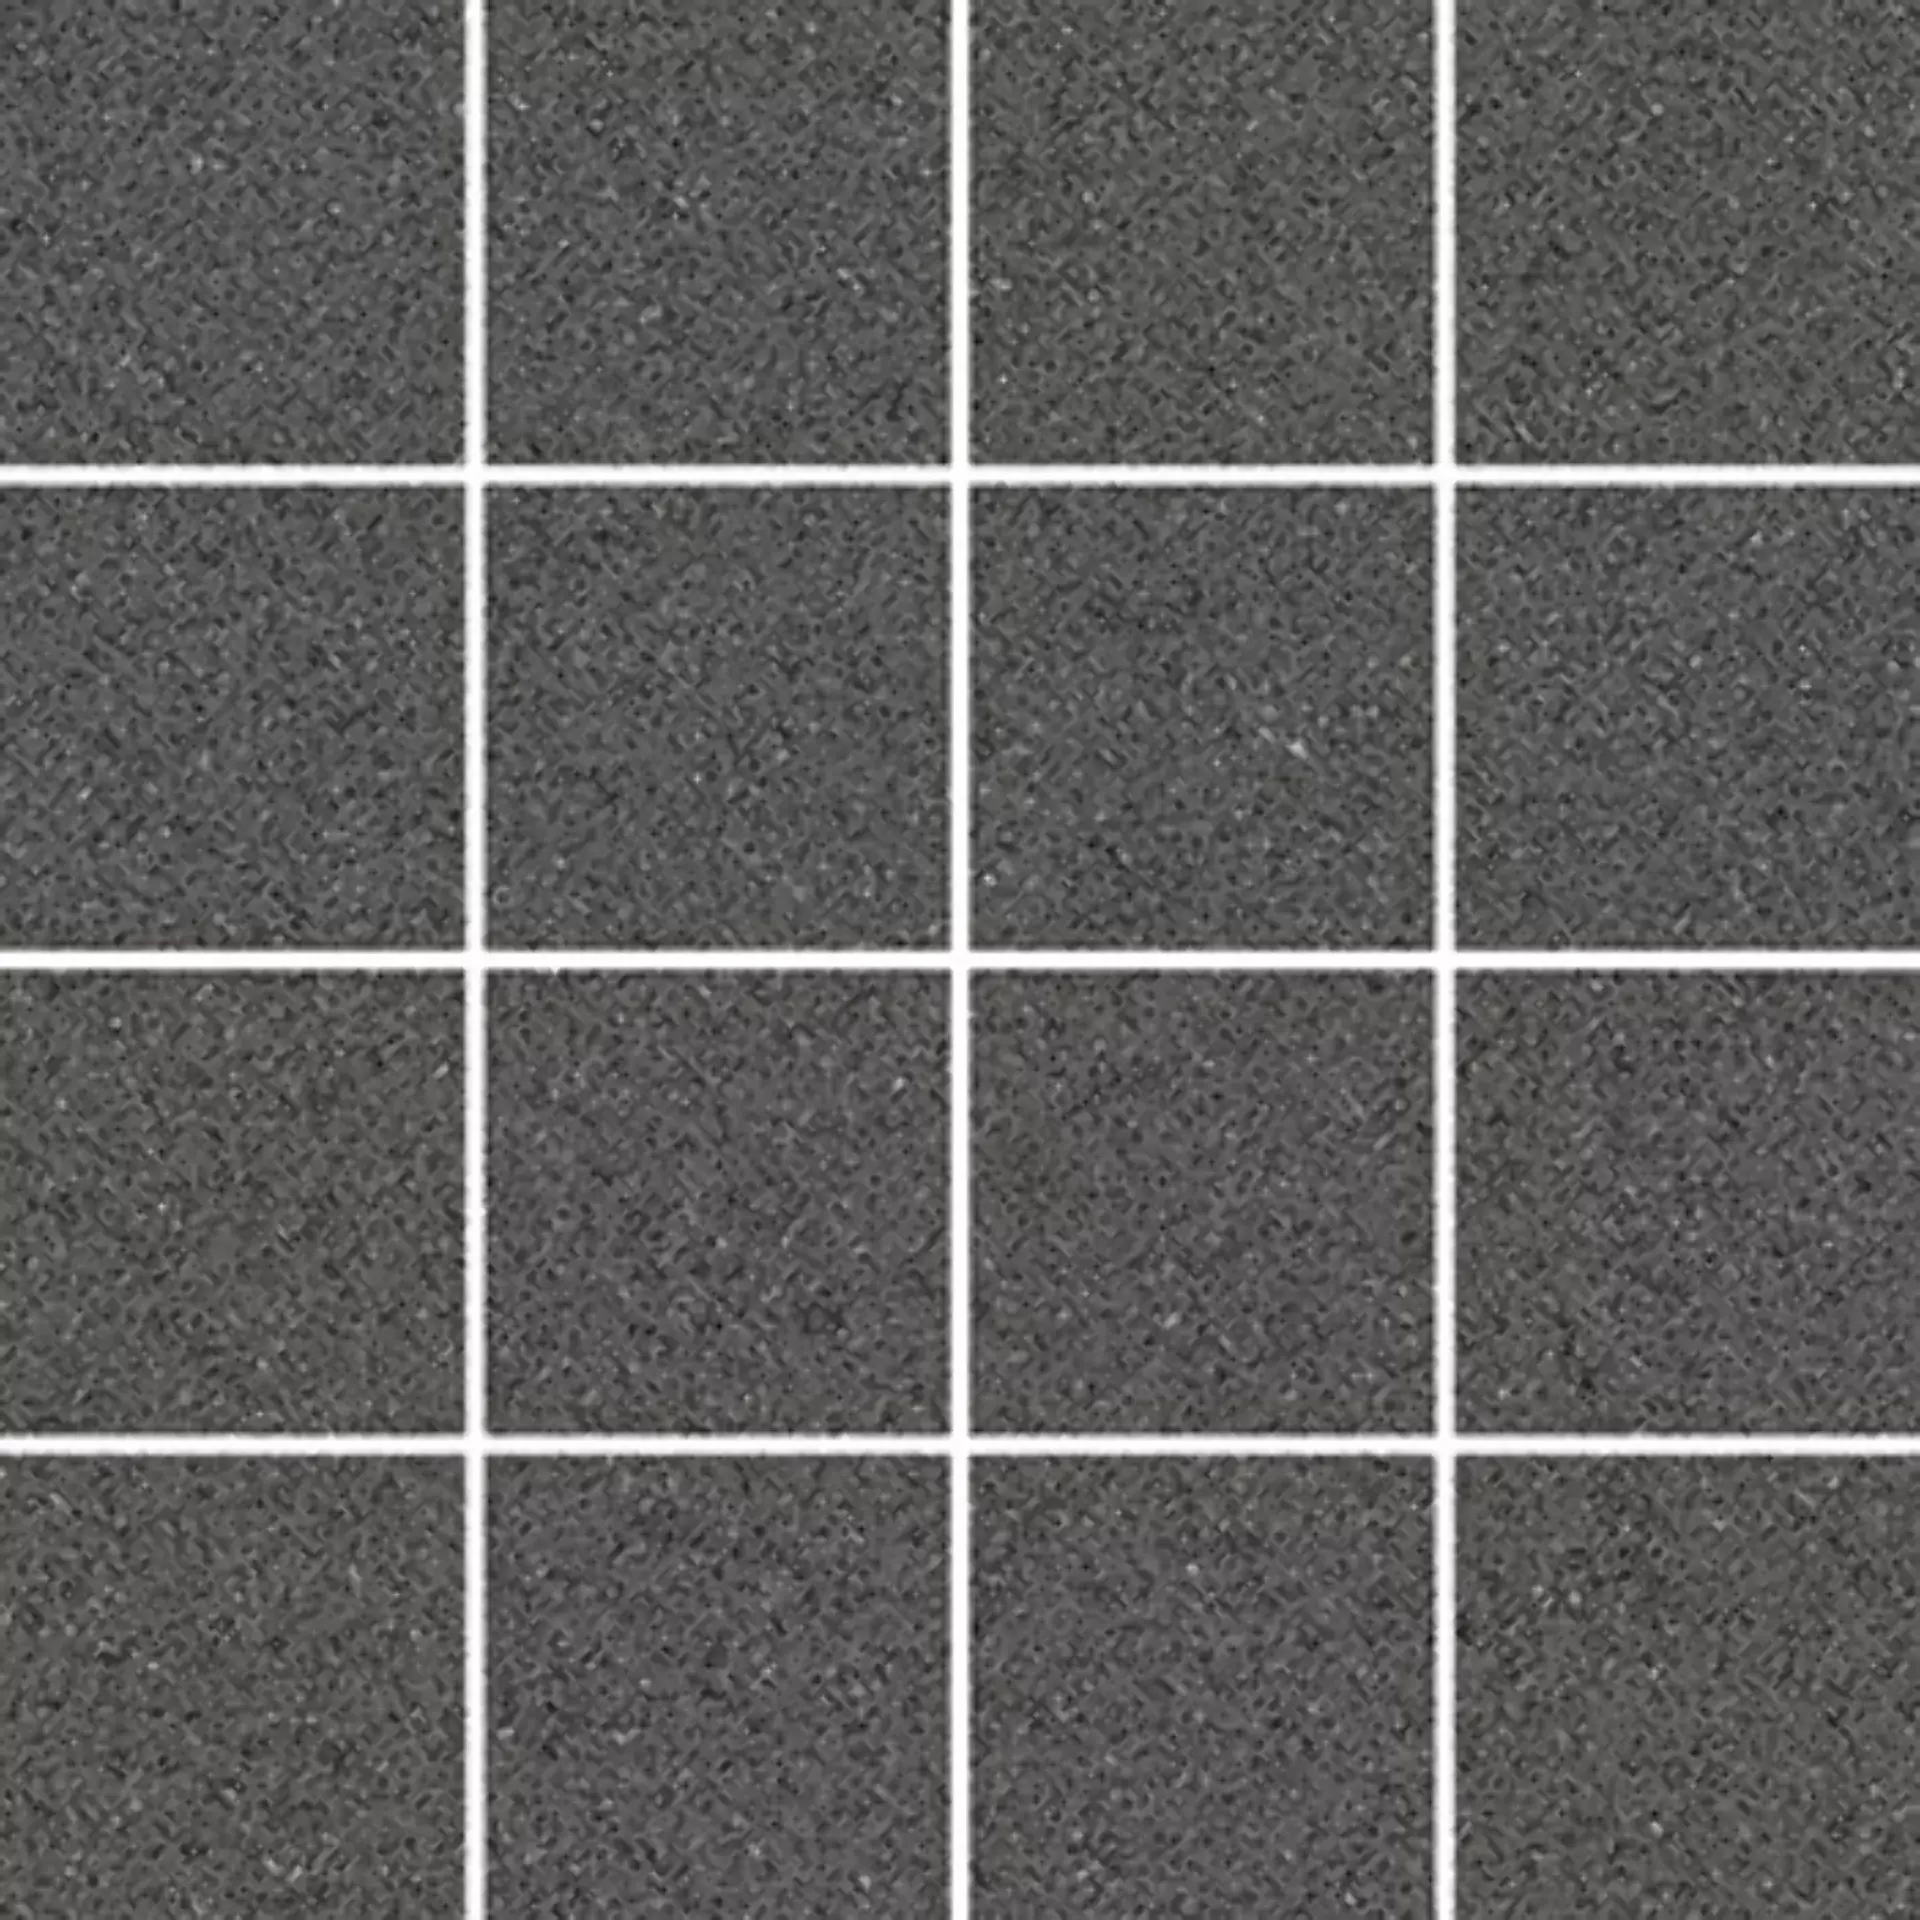 Wandfliese,Bodenfliese Villeroy & Boch Pure Line 2.0 Asphalt Grey Matt Asphalt Grey 2013-UL90 matt 7,5x7,5cm Mosaik (7,5x7,5) rektifiziert 12mm